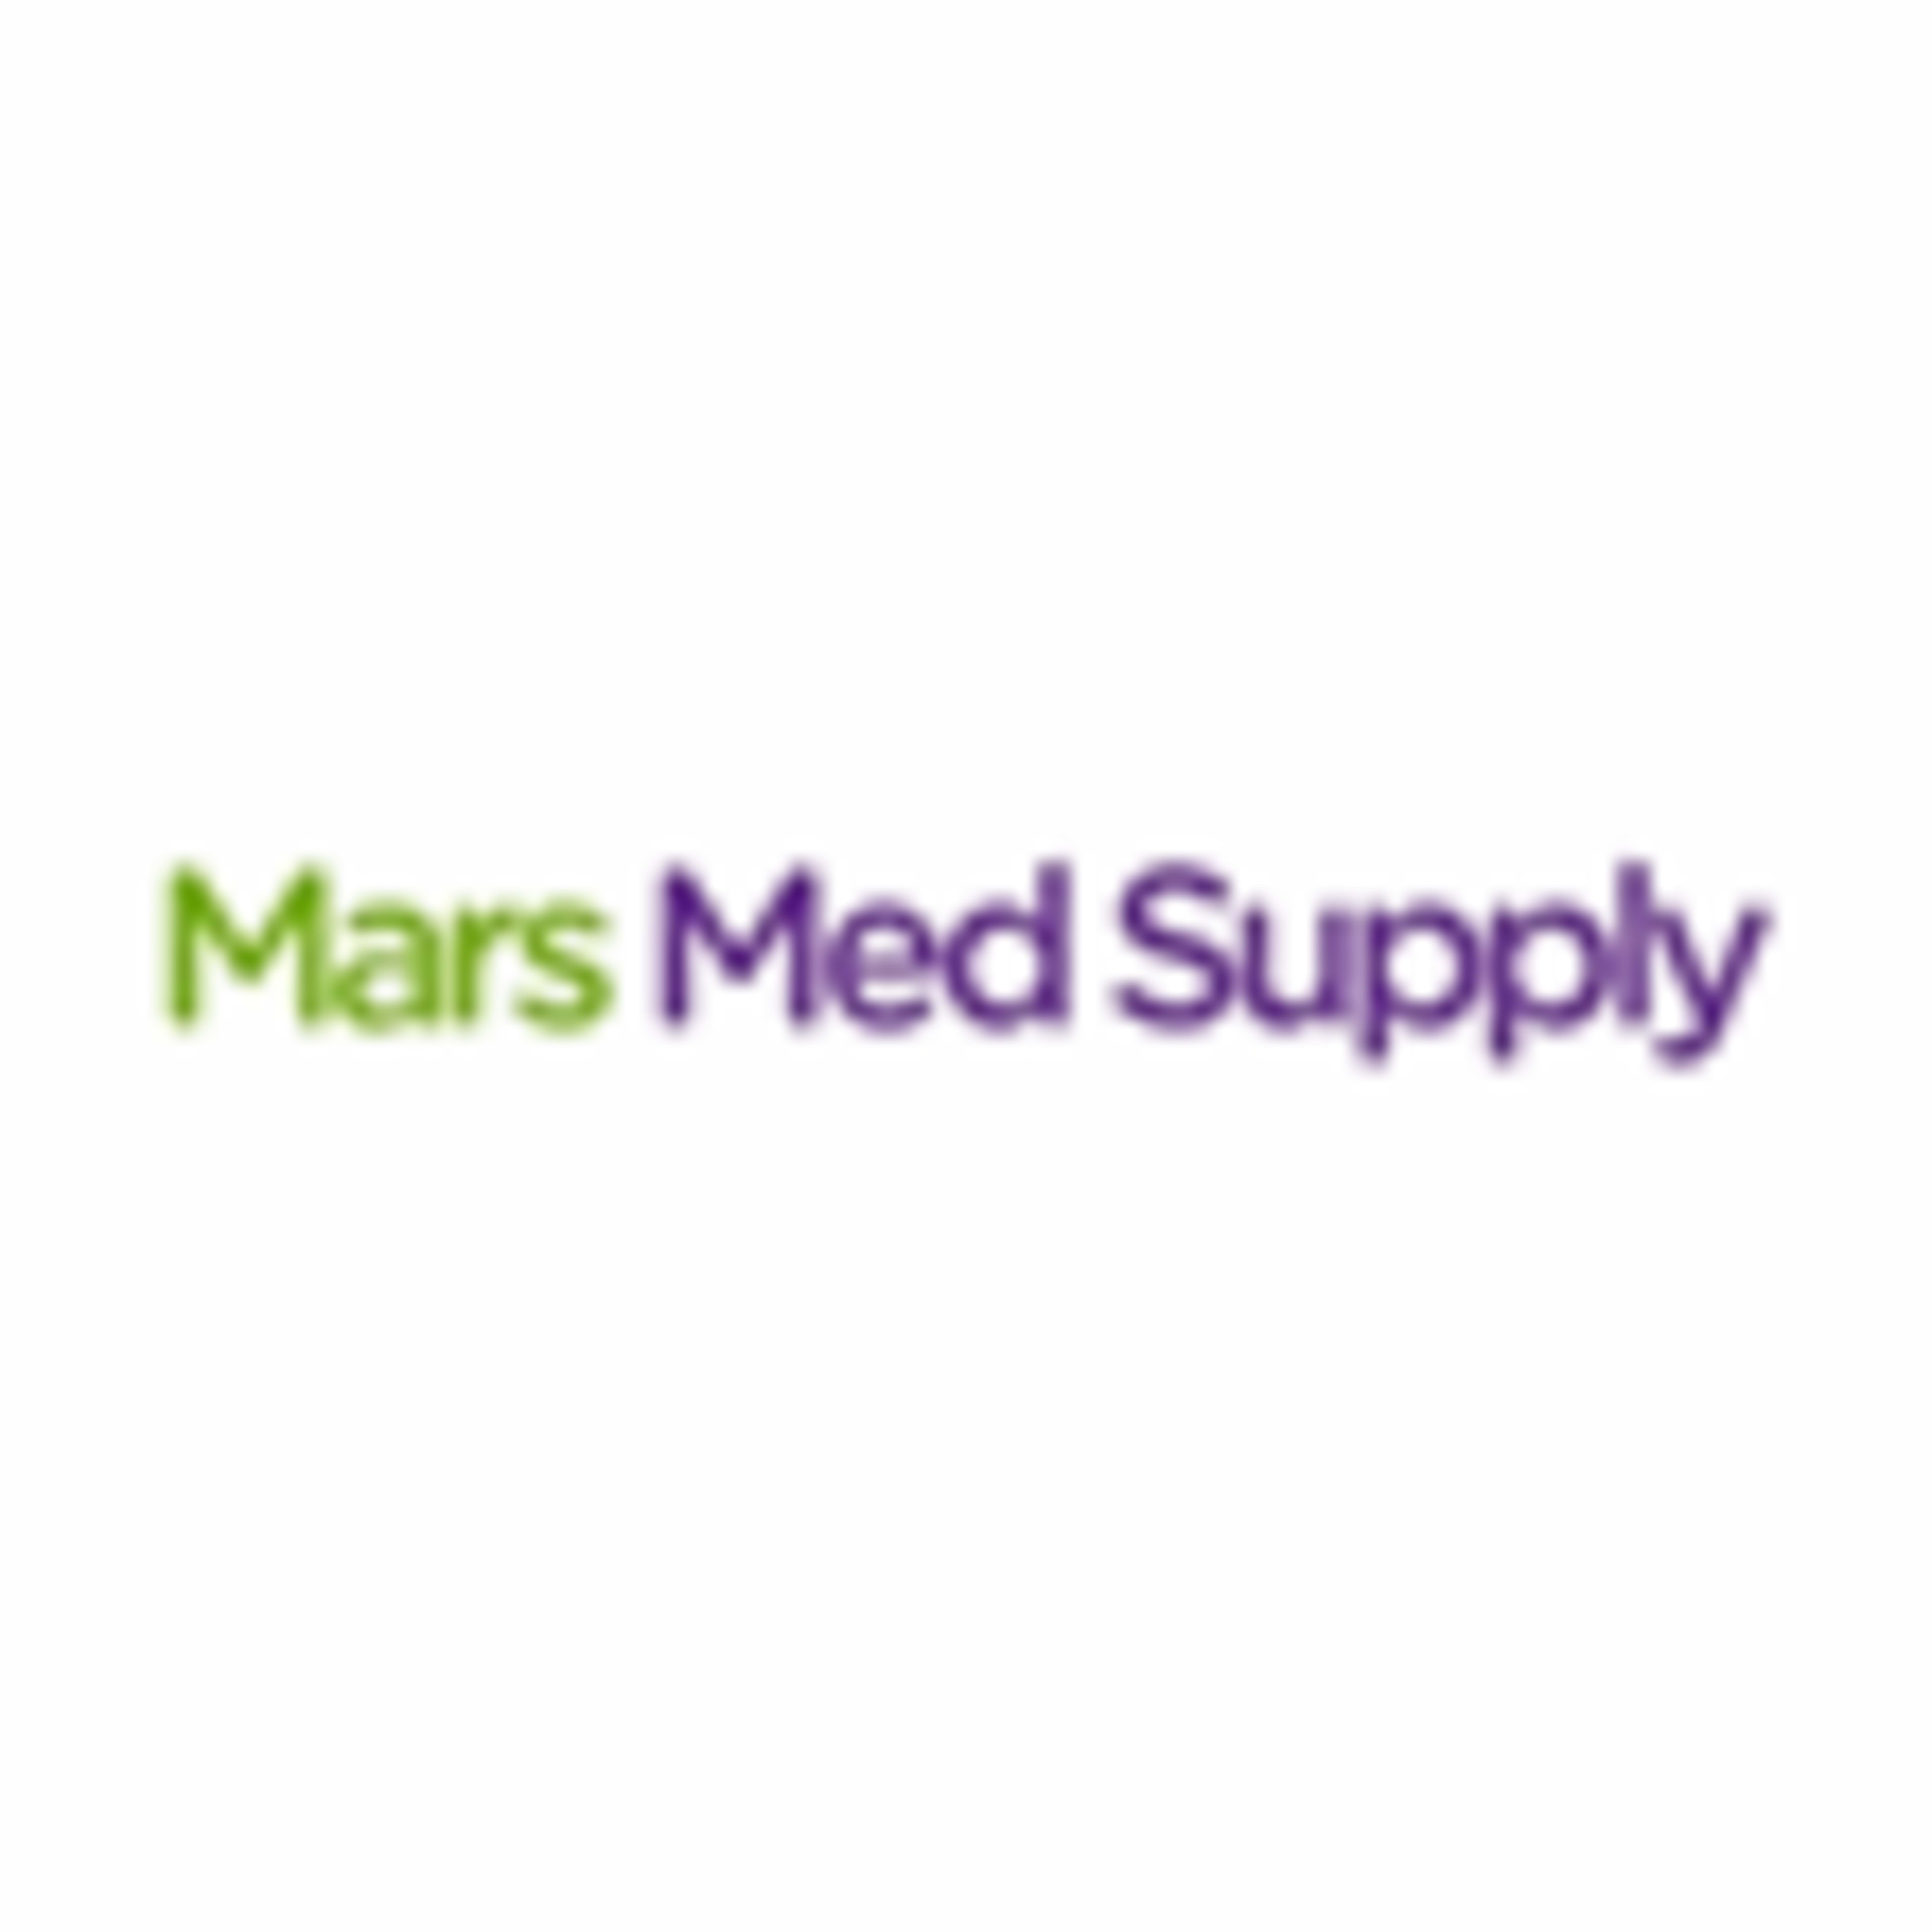 Mars Med Supply Code